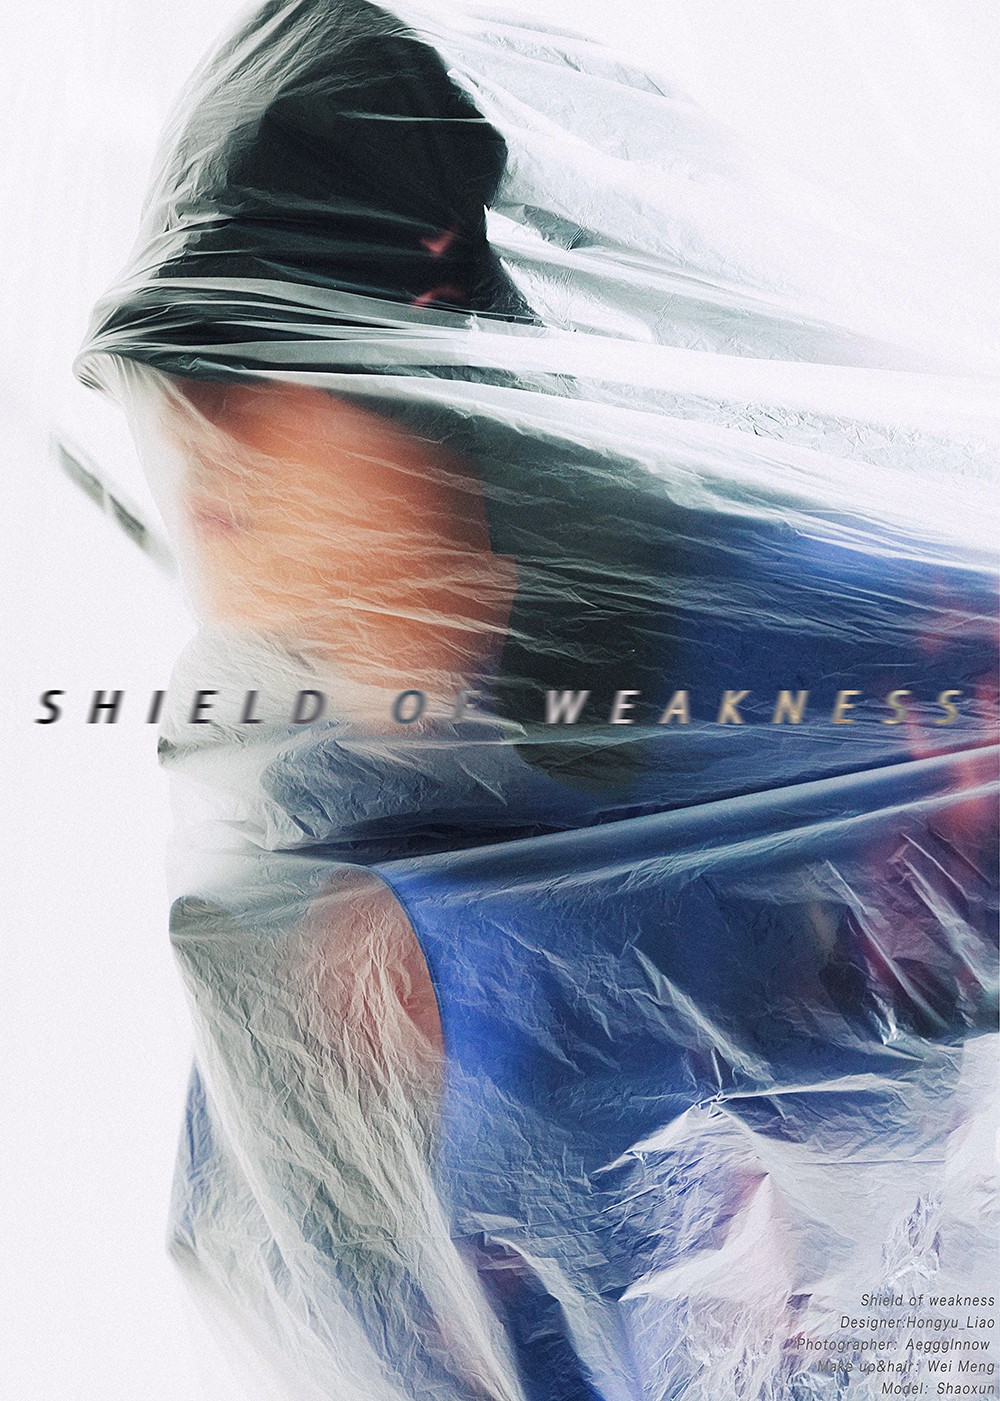 Hongyu _Liao_Hongyu-Liao-Shield of Weakness